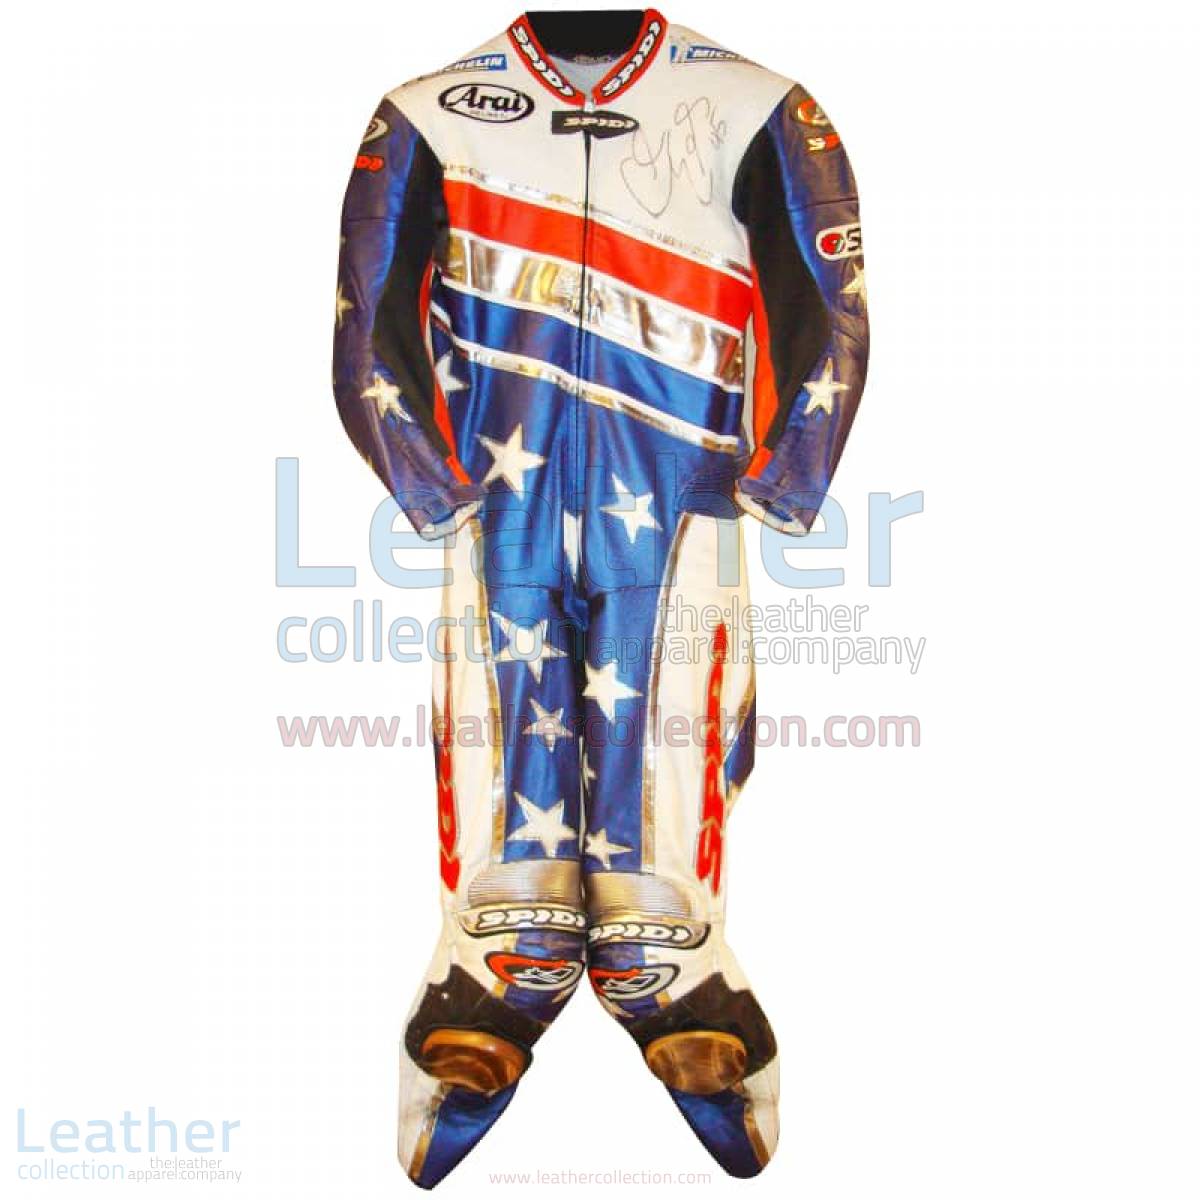 Colin Edwards Aprilia Leathers 2003 MotoGP Pre-season – Aprilia Suit